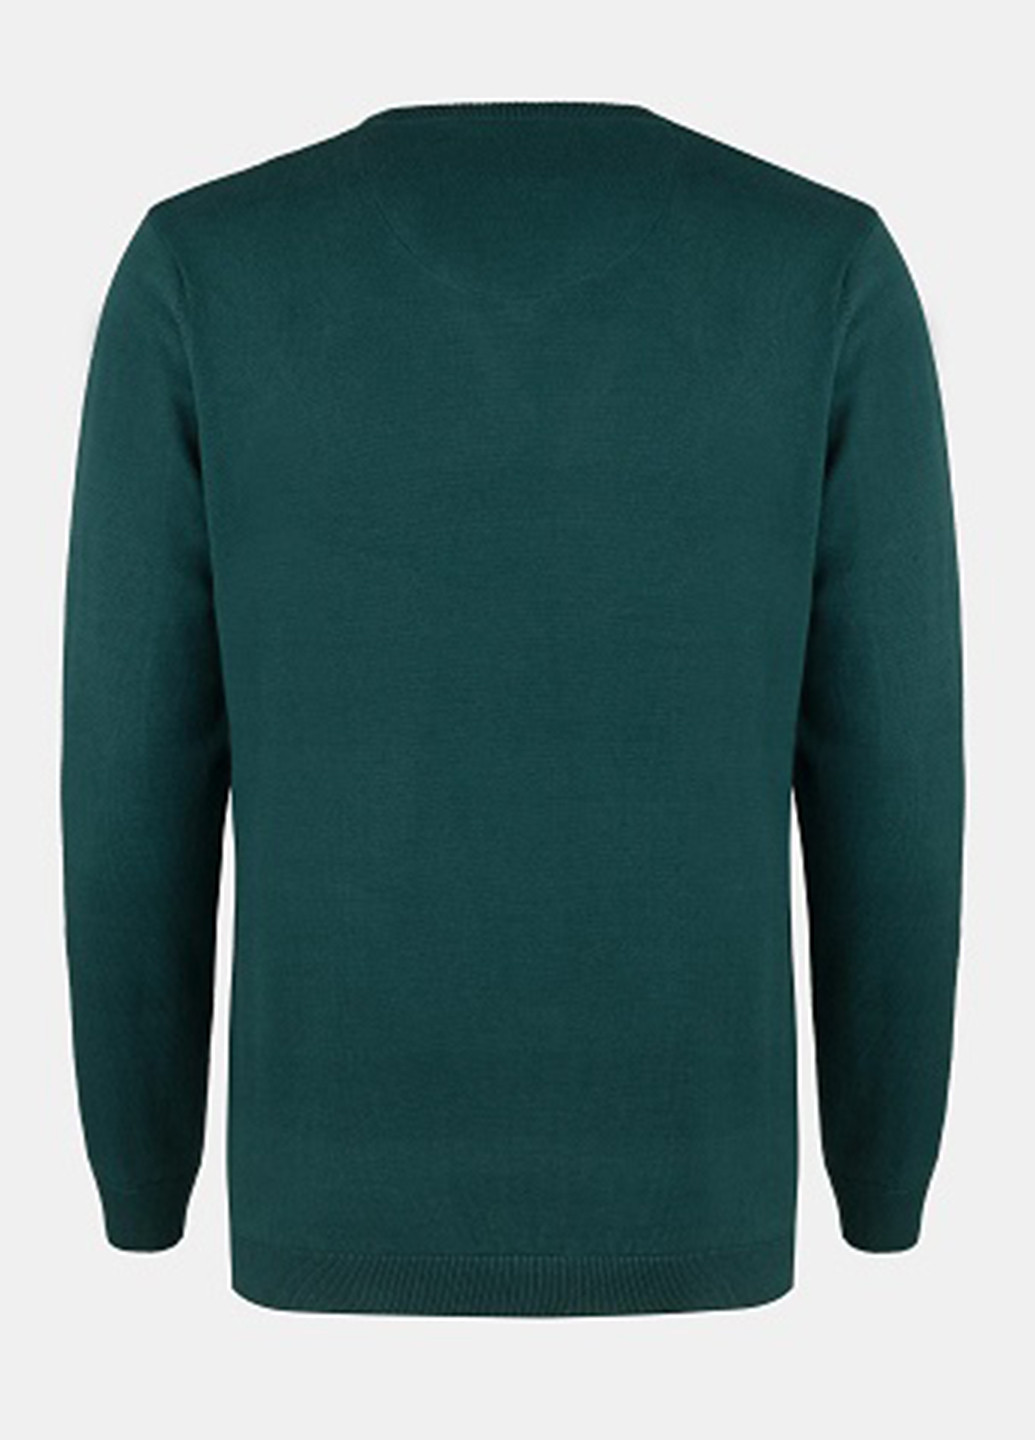 Зеленый демисезонный пуловер пуловер Pako Lorente